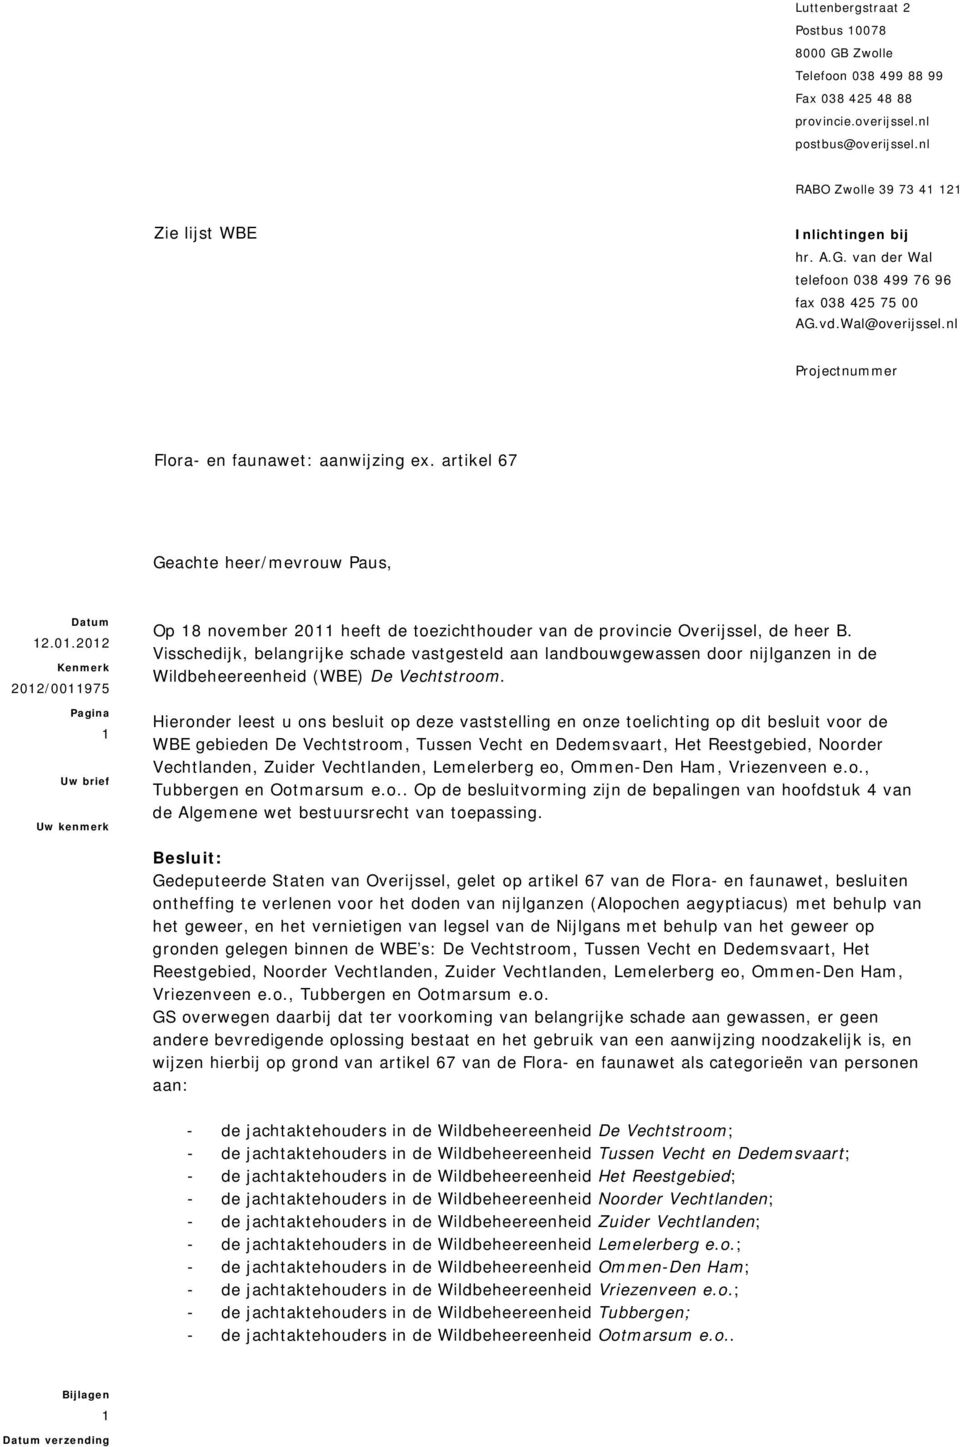 2012 Kenmerk 2012/0011975 Pagina 1 Uw brief Uw kenmerk Op 18 november 2011 heeft de toezichthouder van de provincie Overijssel, de heer B.